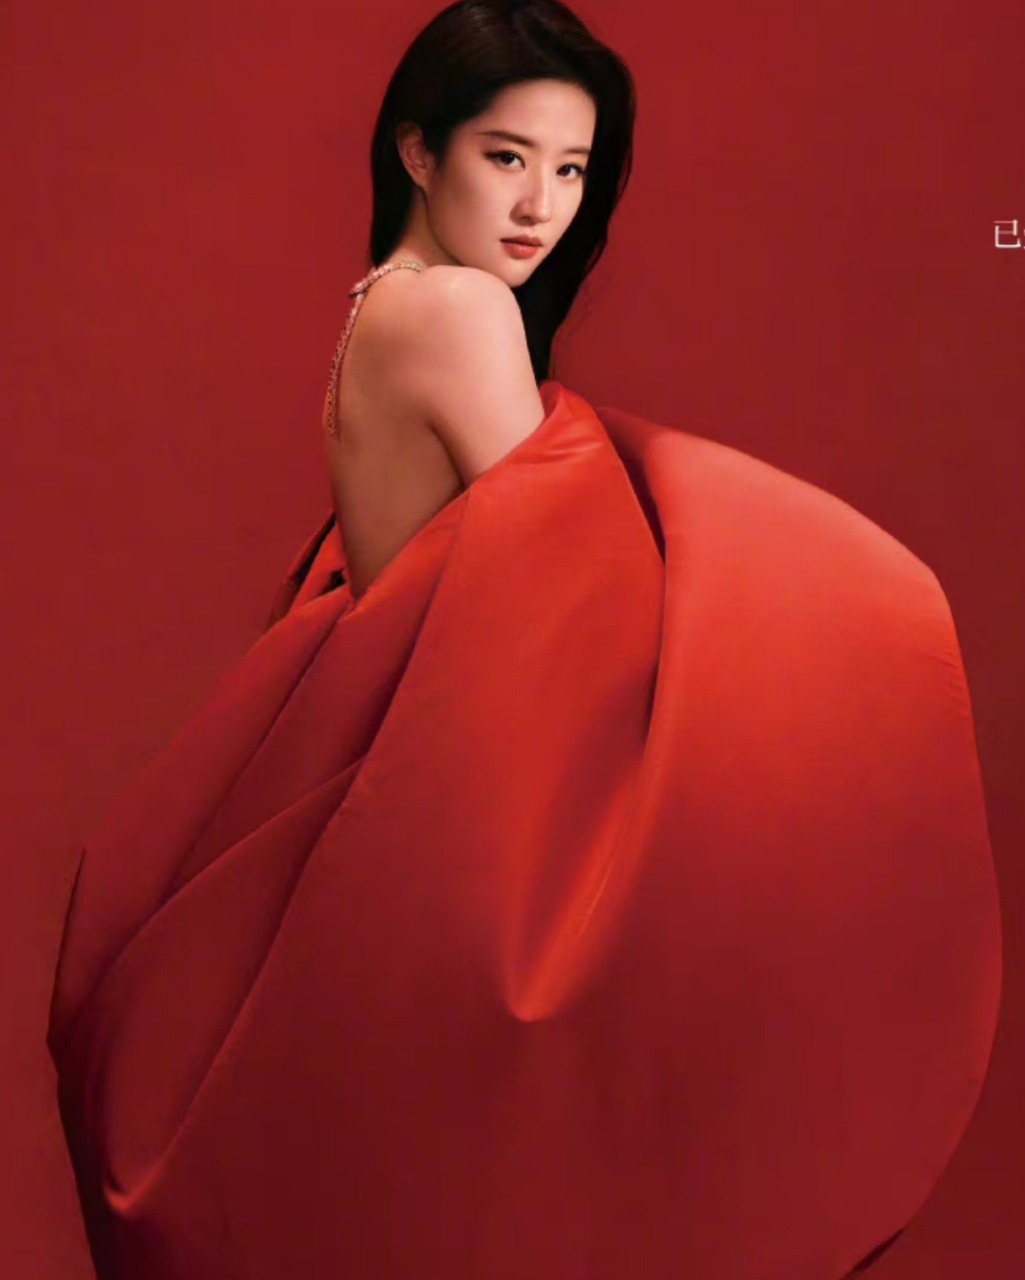 刘亦菲的杂志封面照太高级,红色礼服梦回花木兰时期,简单的场景却表现